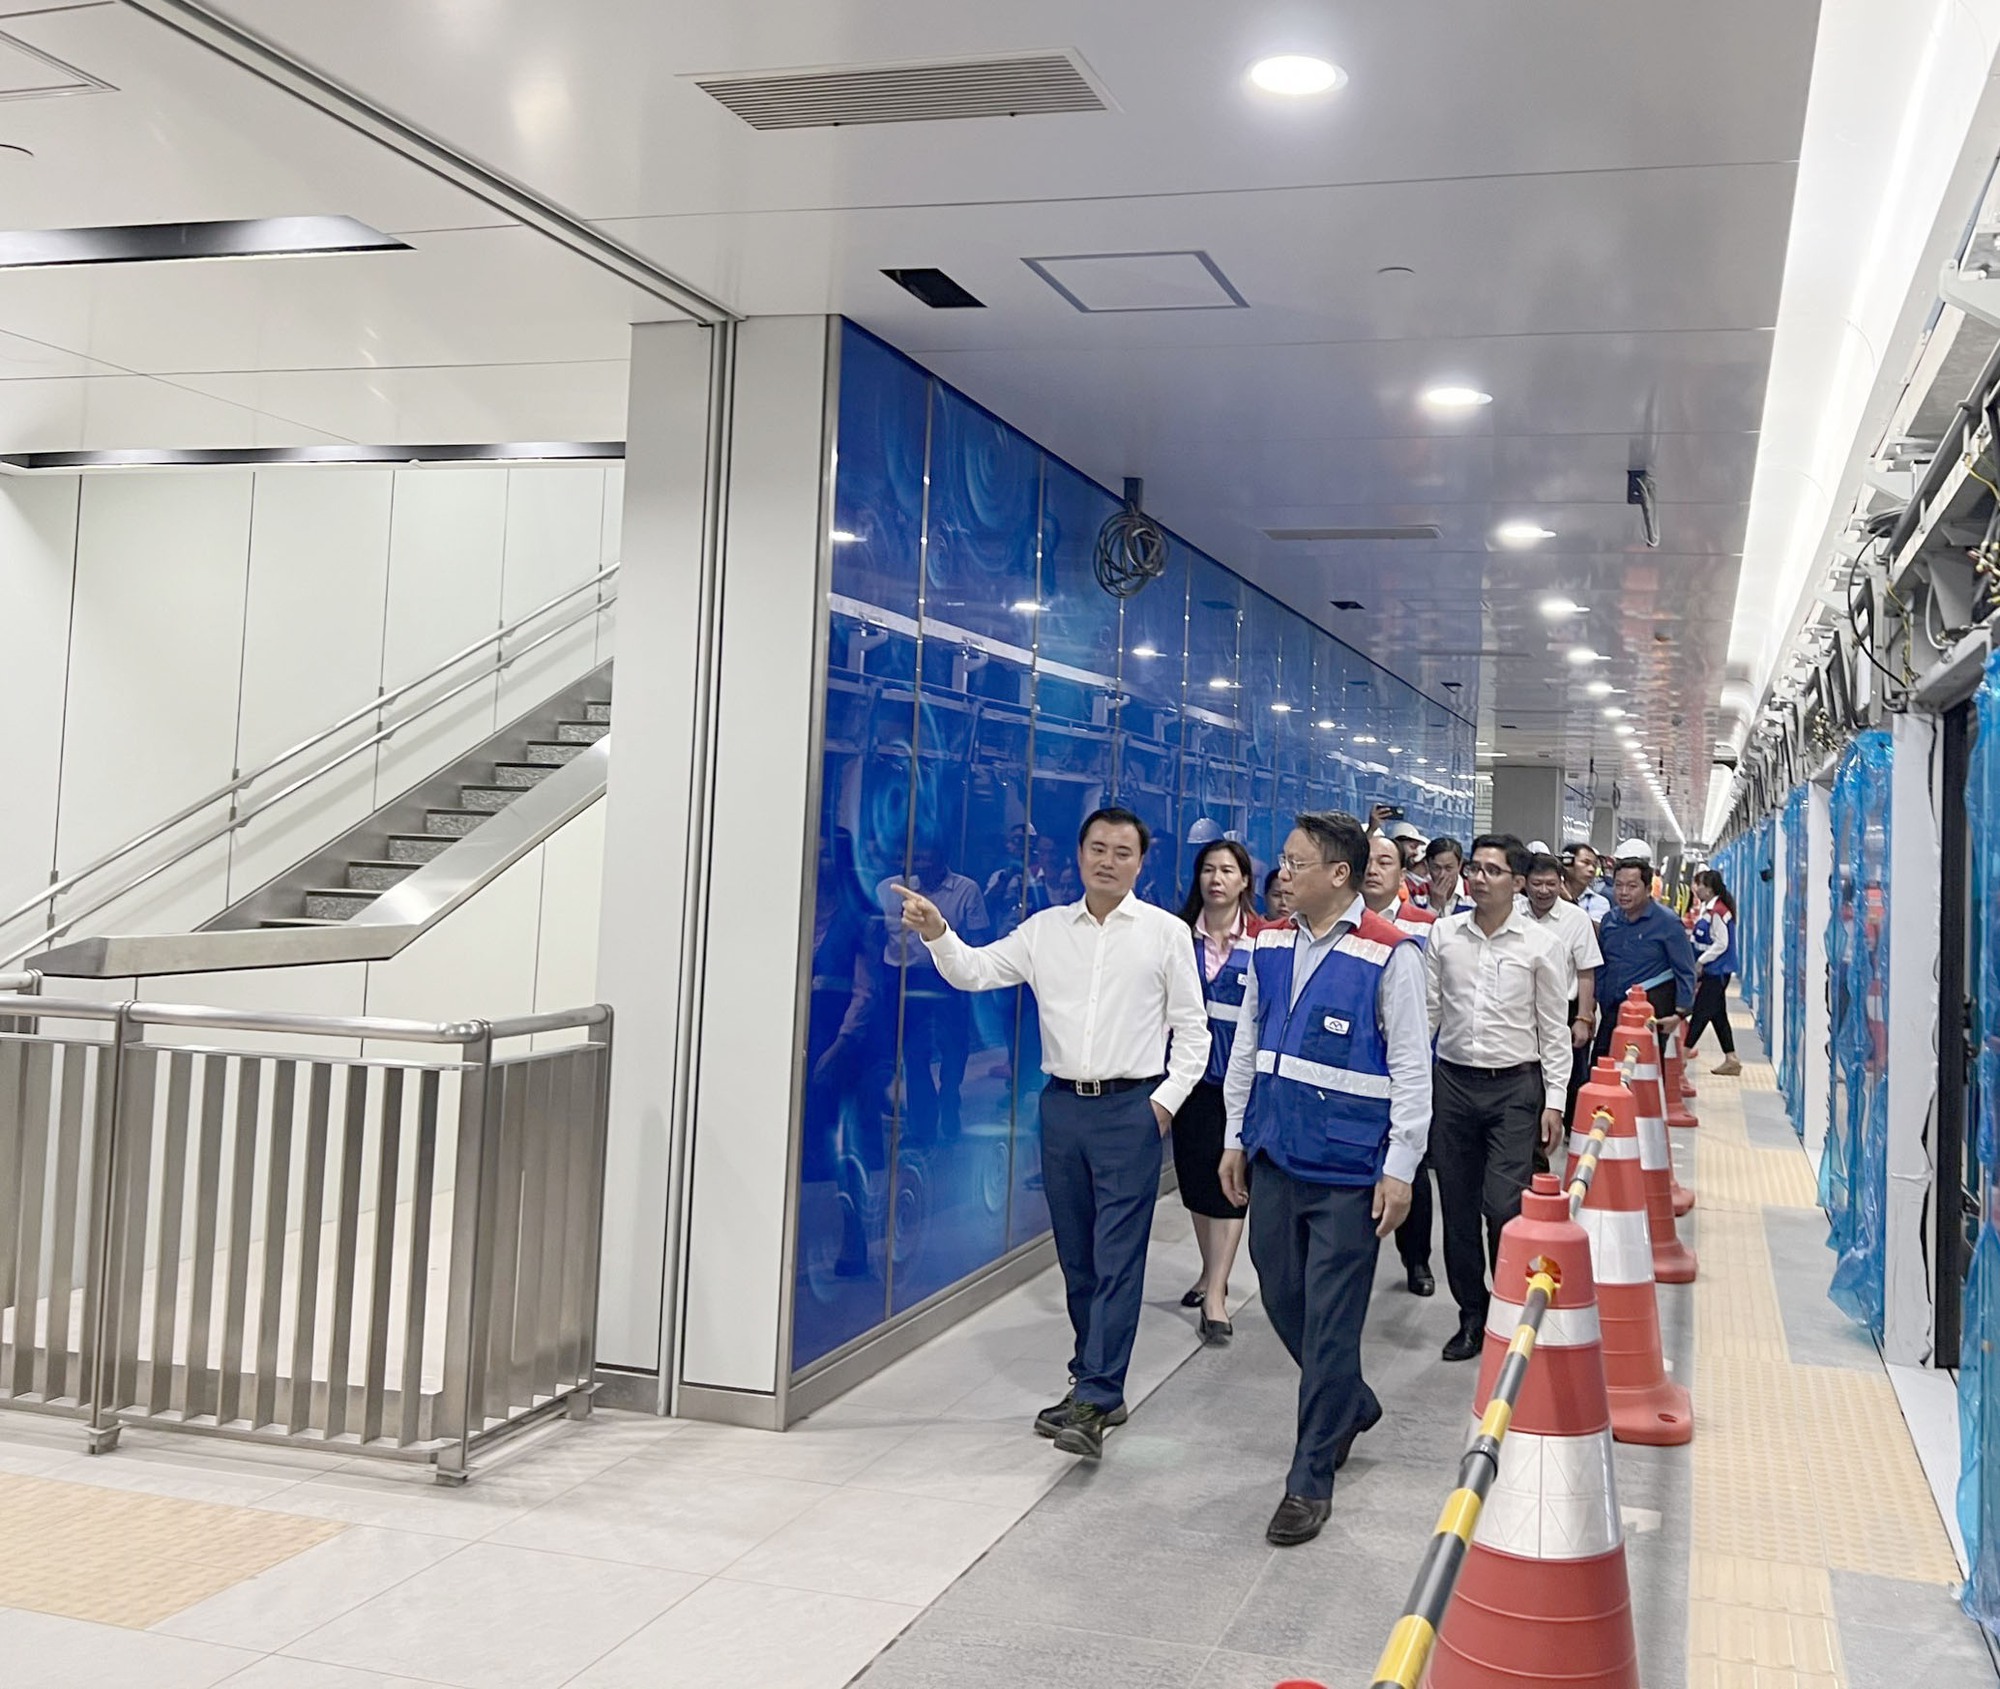 Video trải nghiệm trên tuyến metro Bến Thành - Suối Tiên - Ảnh 4.